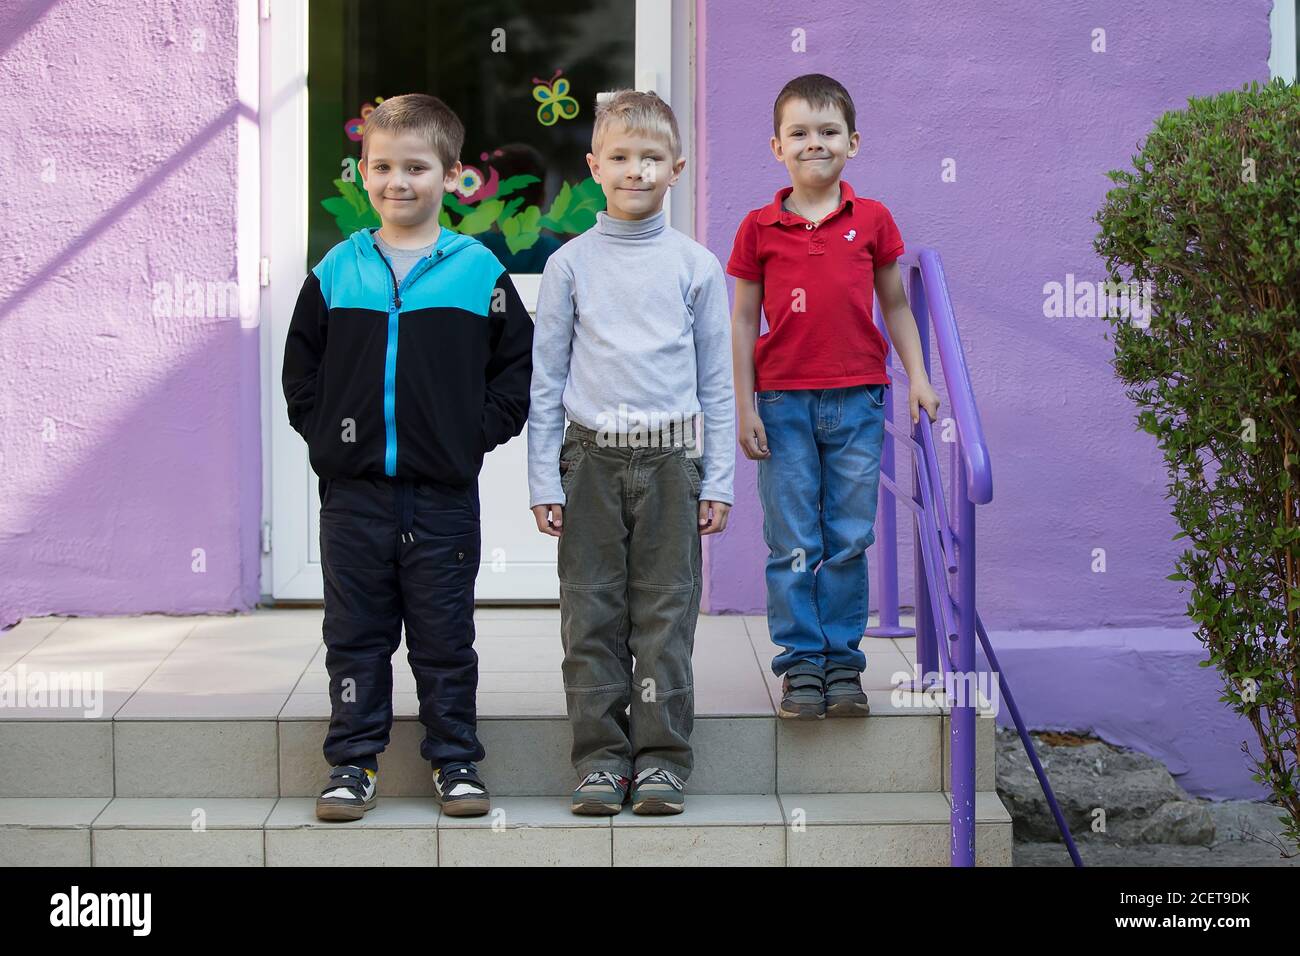 Bélarus, la ville de Gomel, 25 avril 2019. Jardin d'enfants ouvert jour. Trois garçons amusants de la maternelle. Trois camarades. Banque D'Images